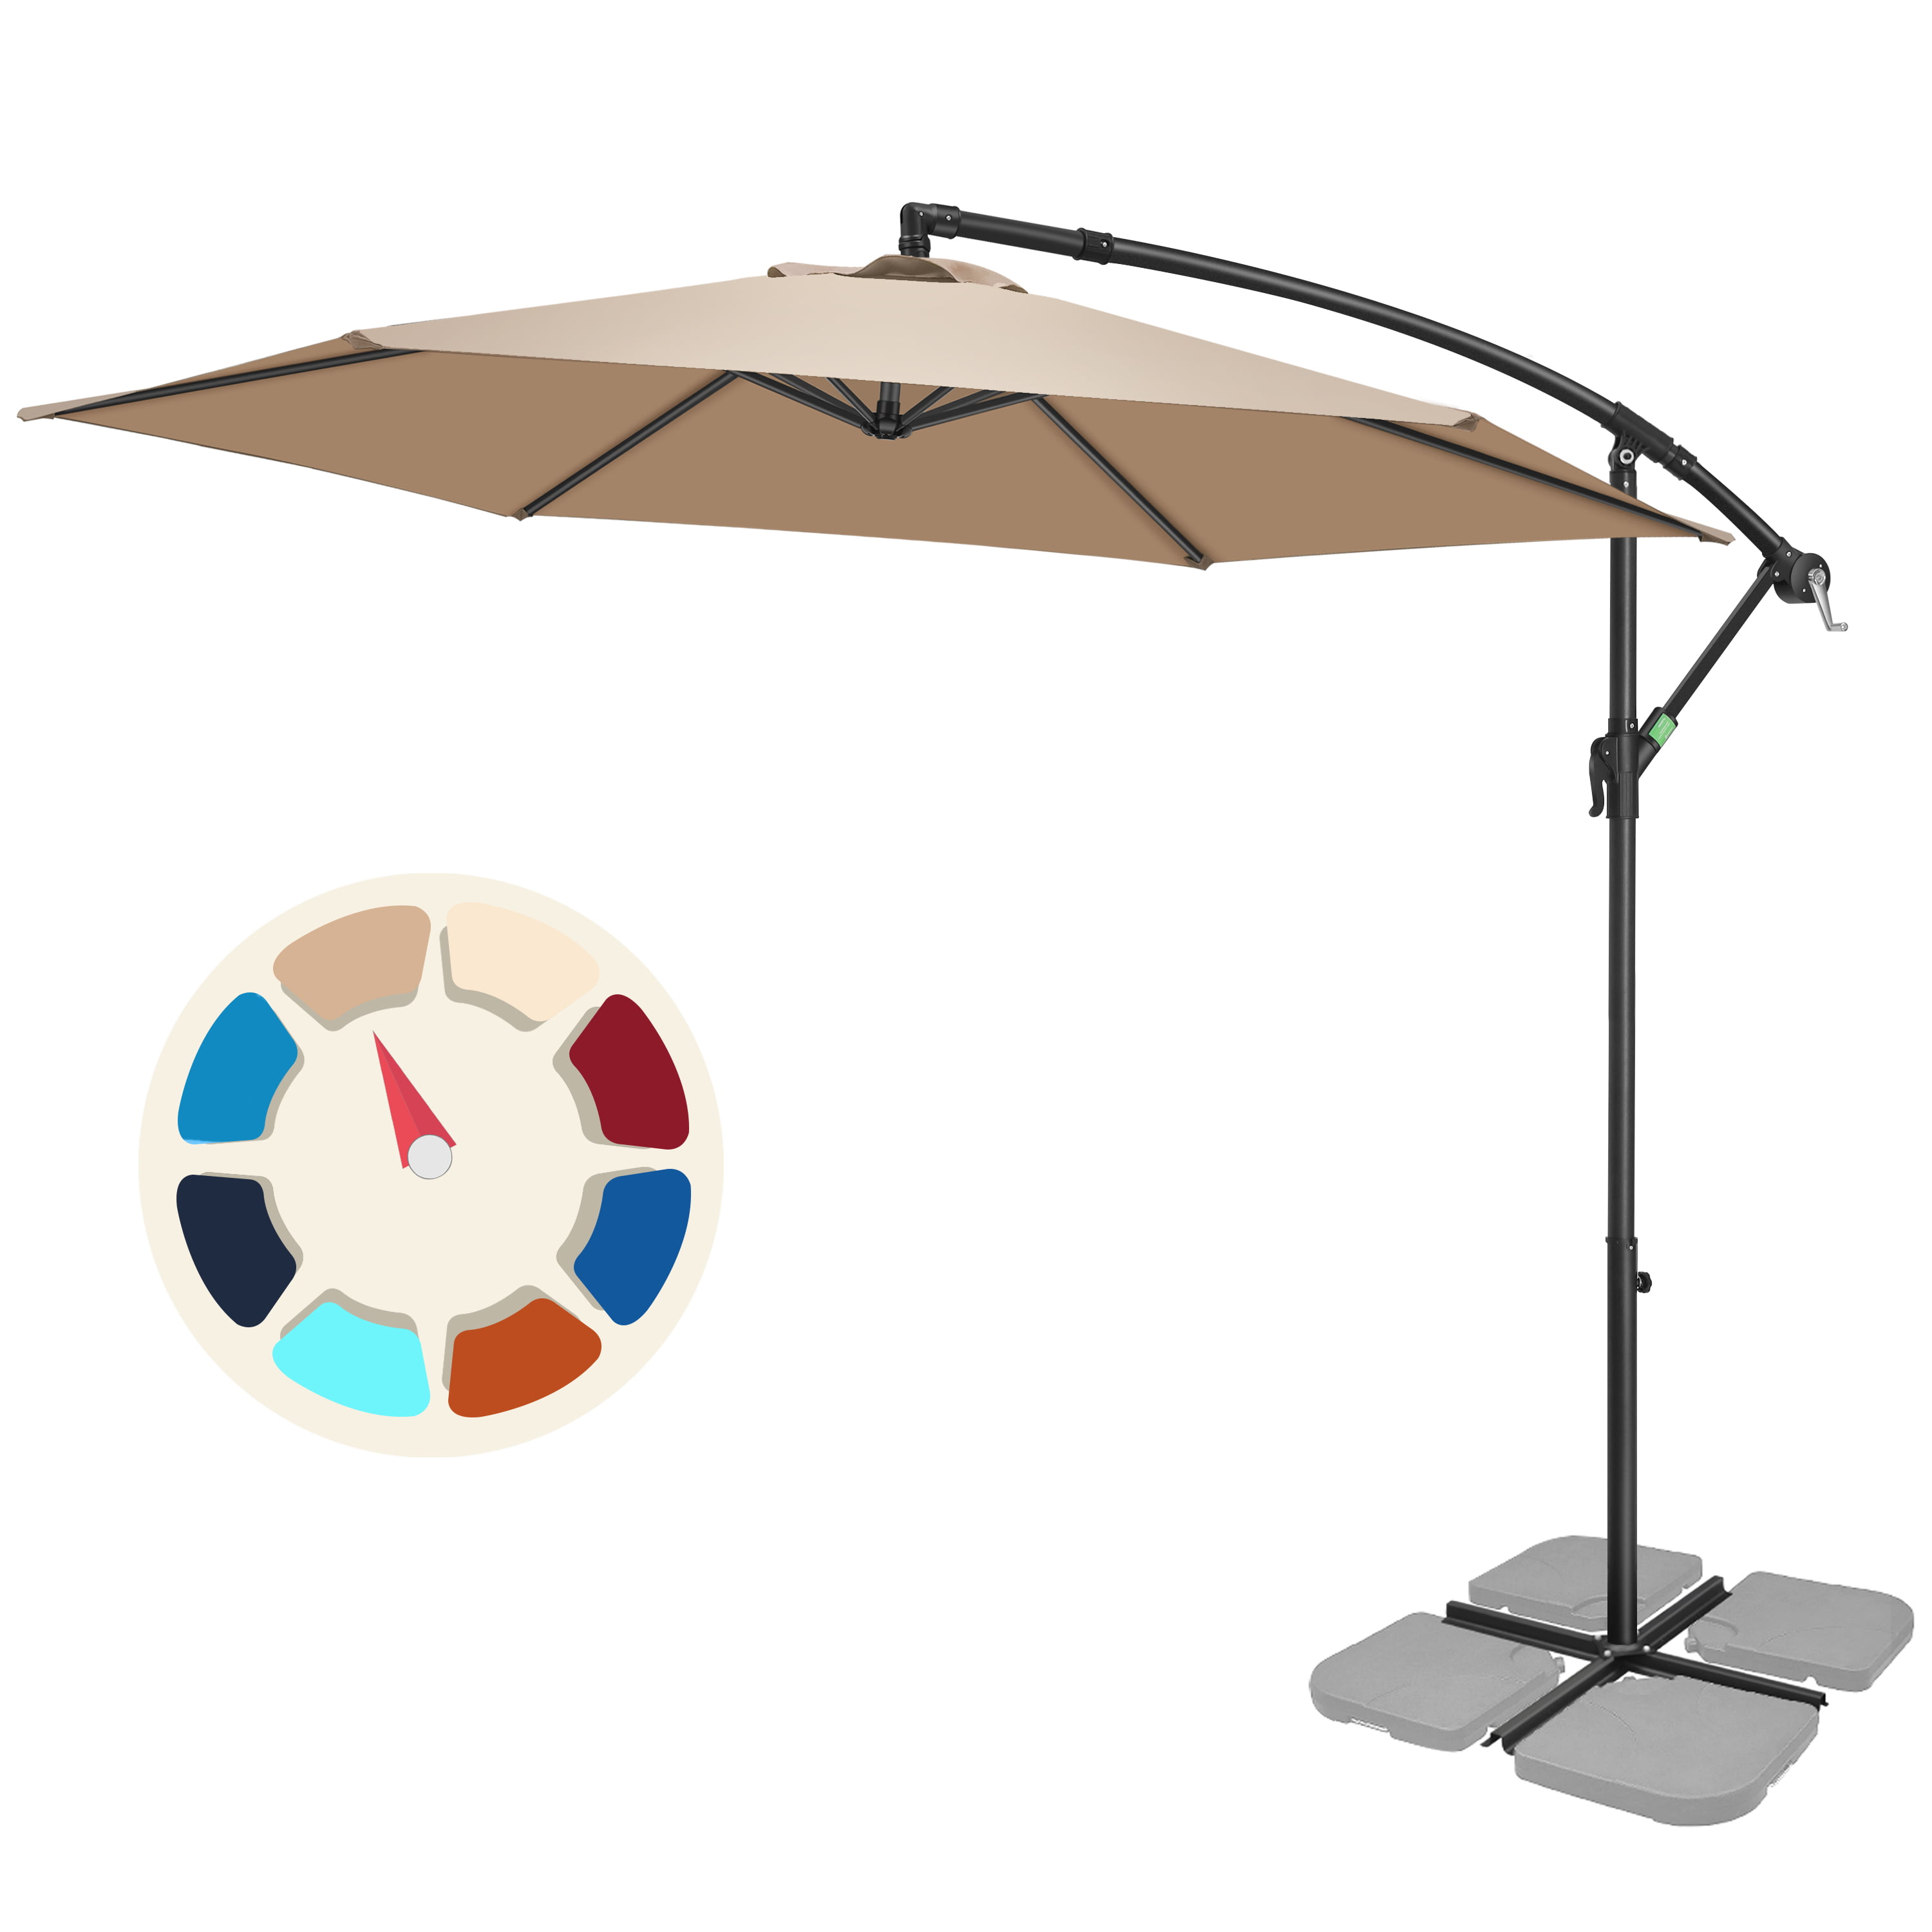 8 Best Outdoor Patio Umbrellas in 2021 